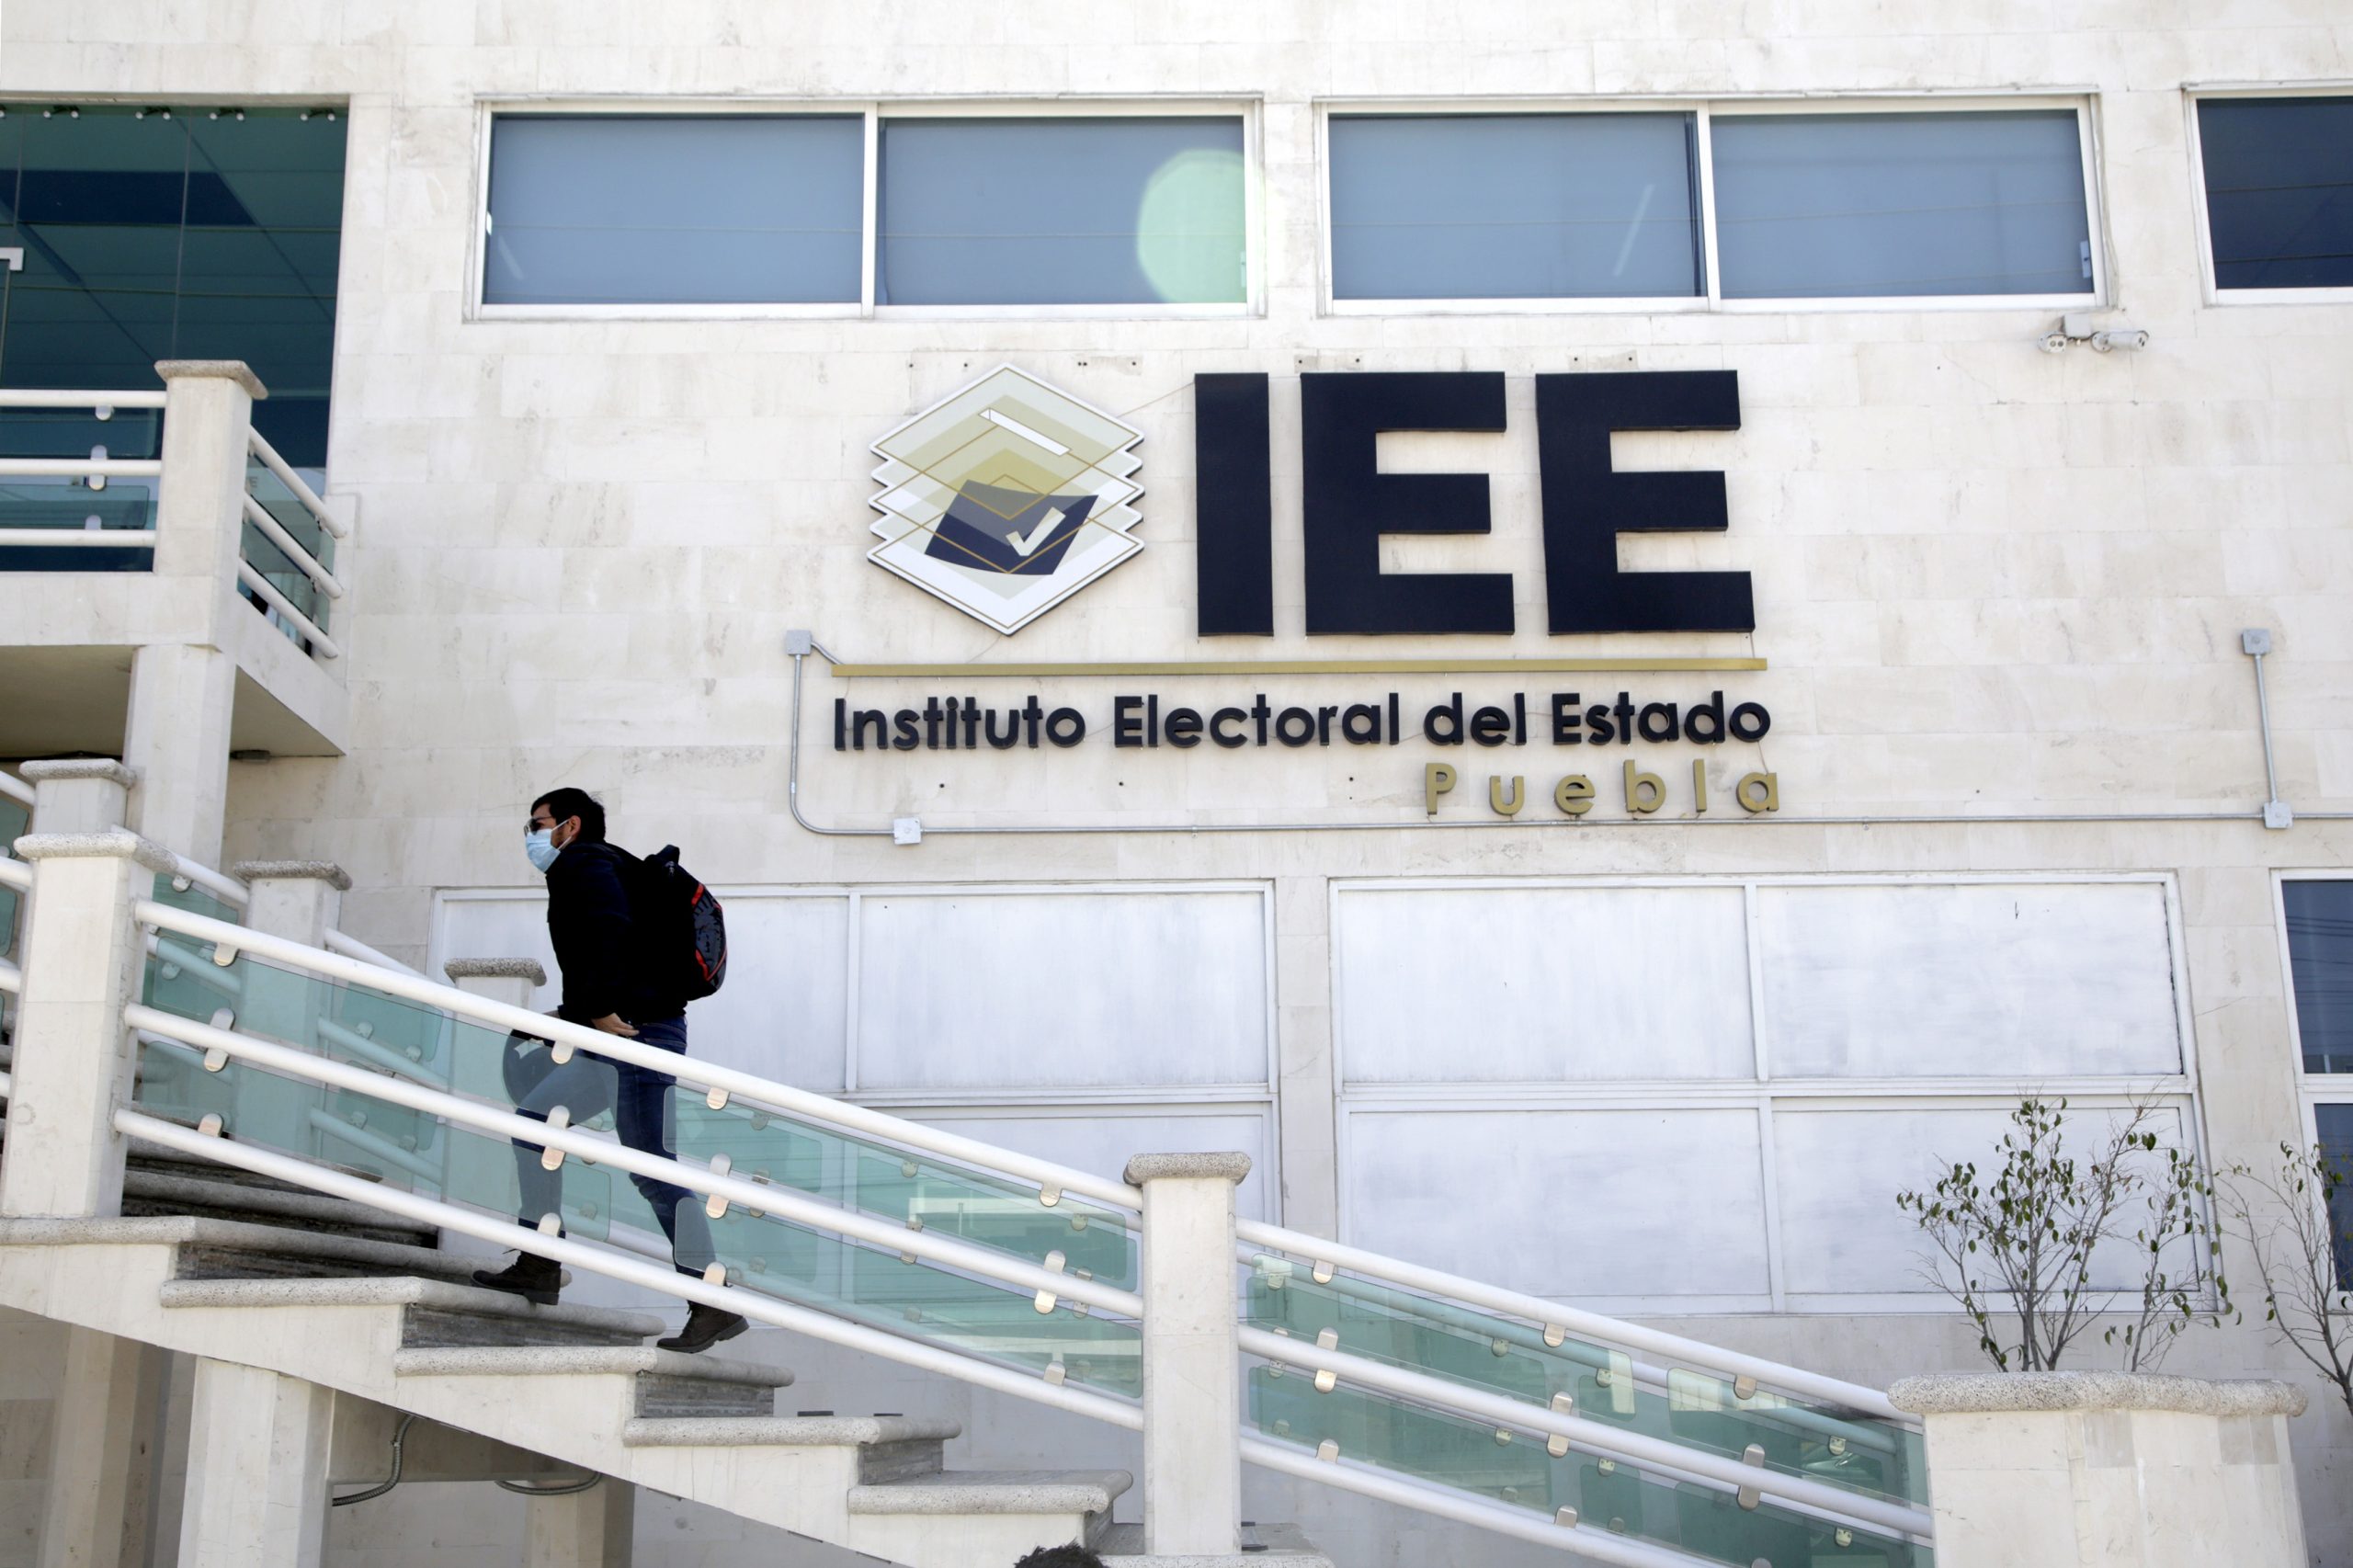 Propone IEE registros en línea para extraordinarias; partidos expresan inconformidad